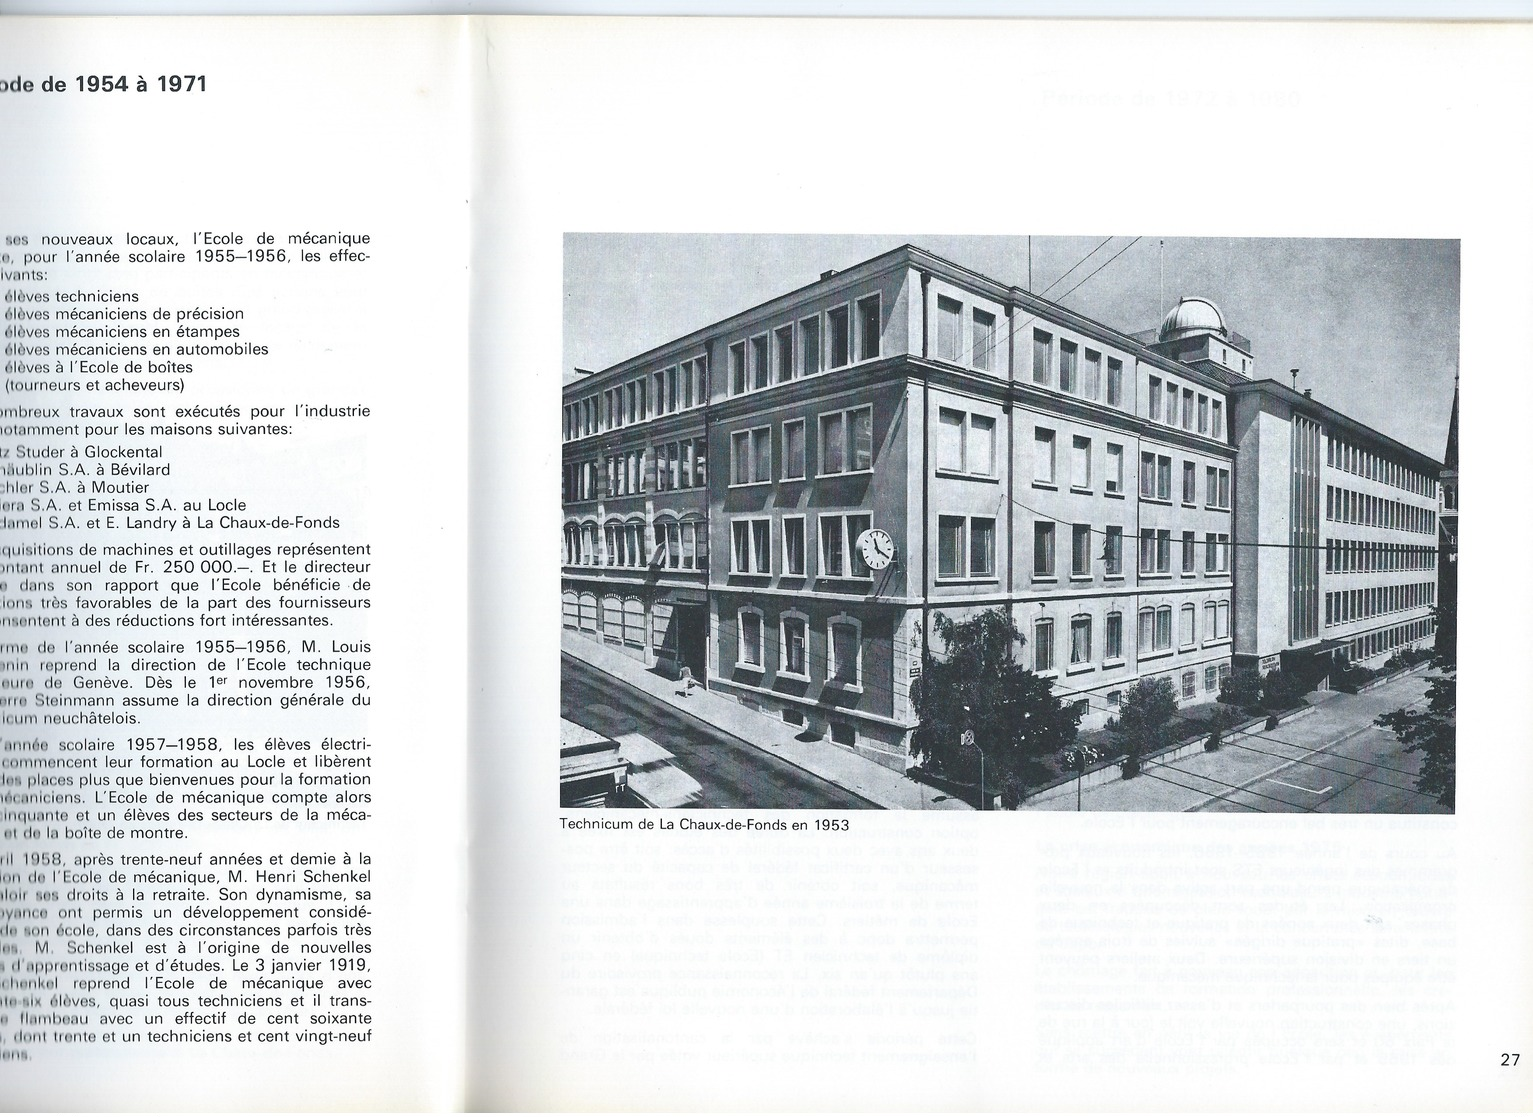 Centenaire de l'Ecole de mécanique de La Chaux-de-Fonds 1886-1986